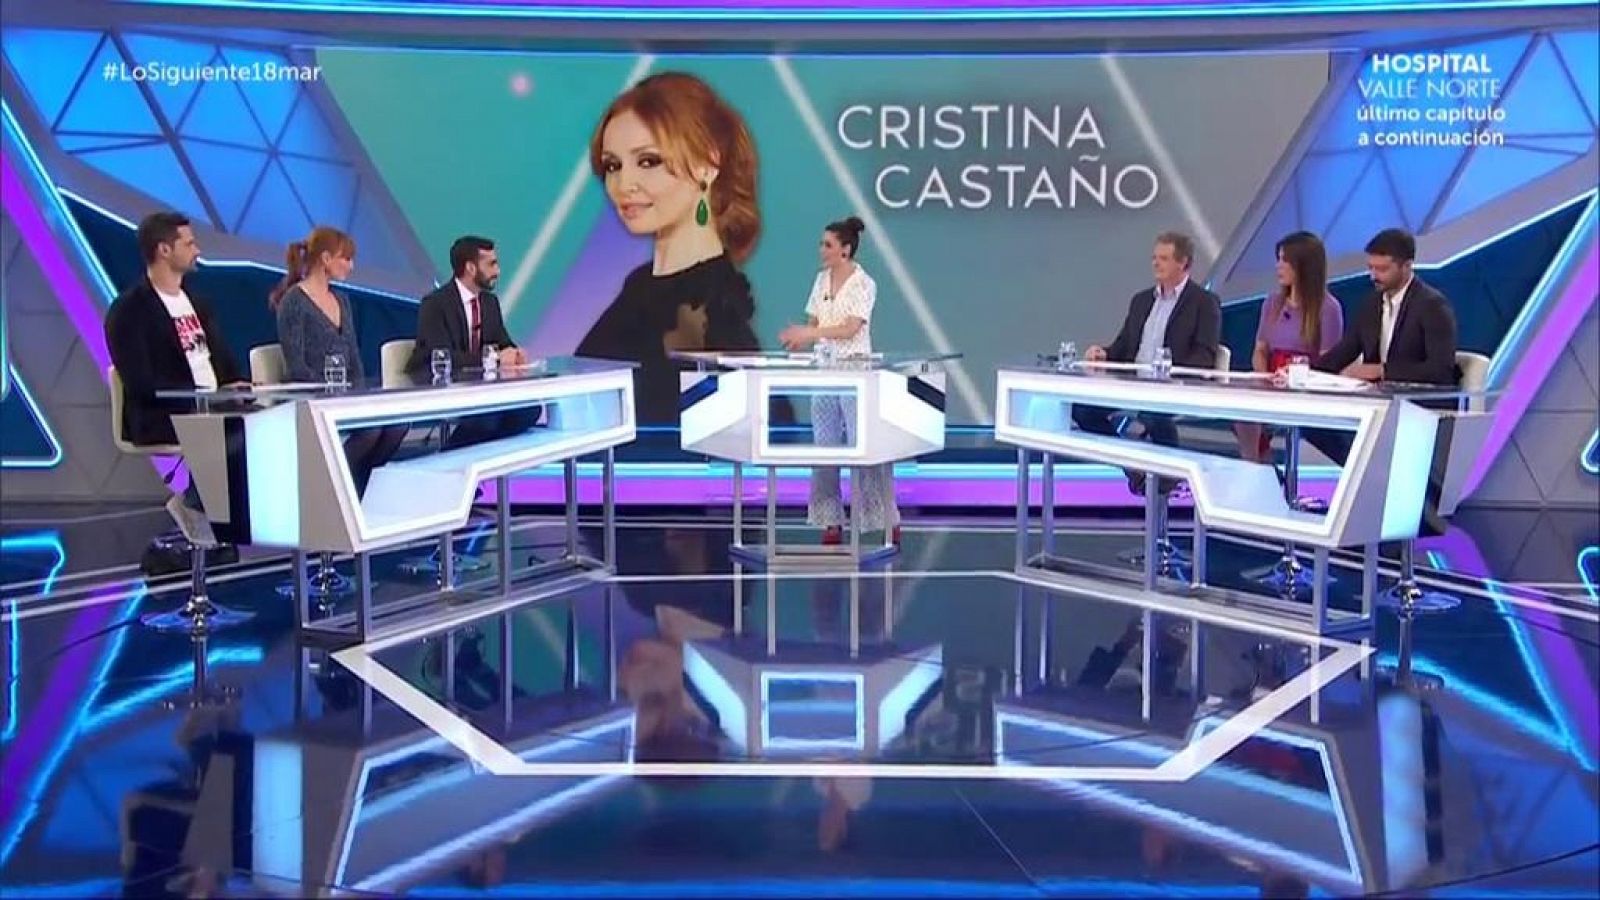 Lo siguiente - Cristina Castao - 18/03/19 - ver ahora